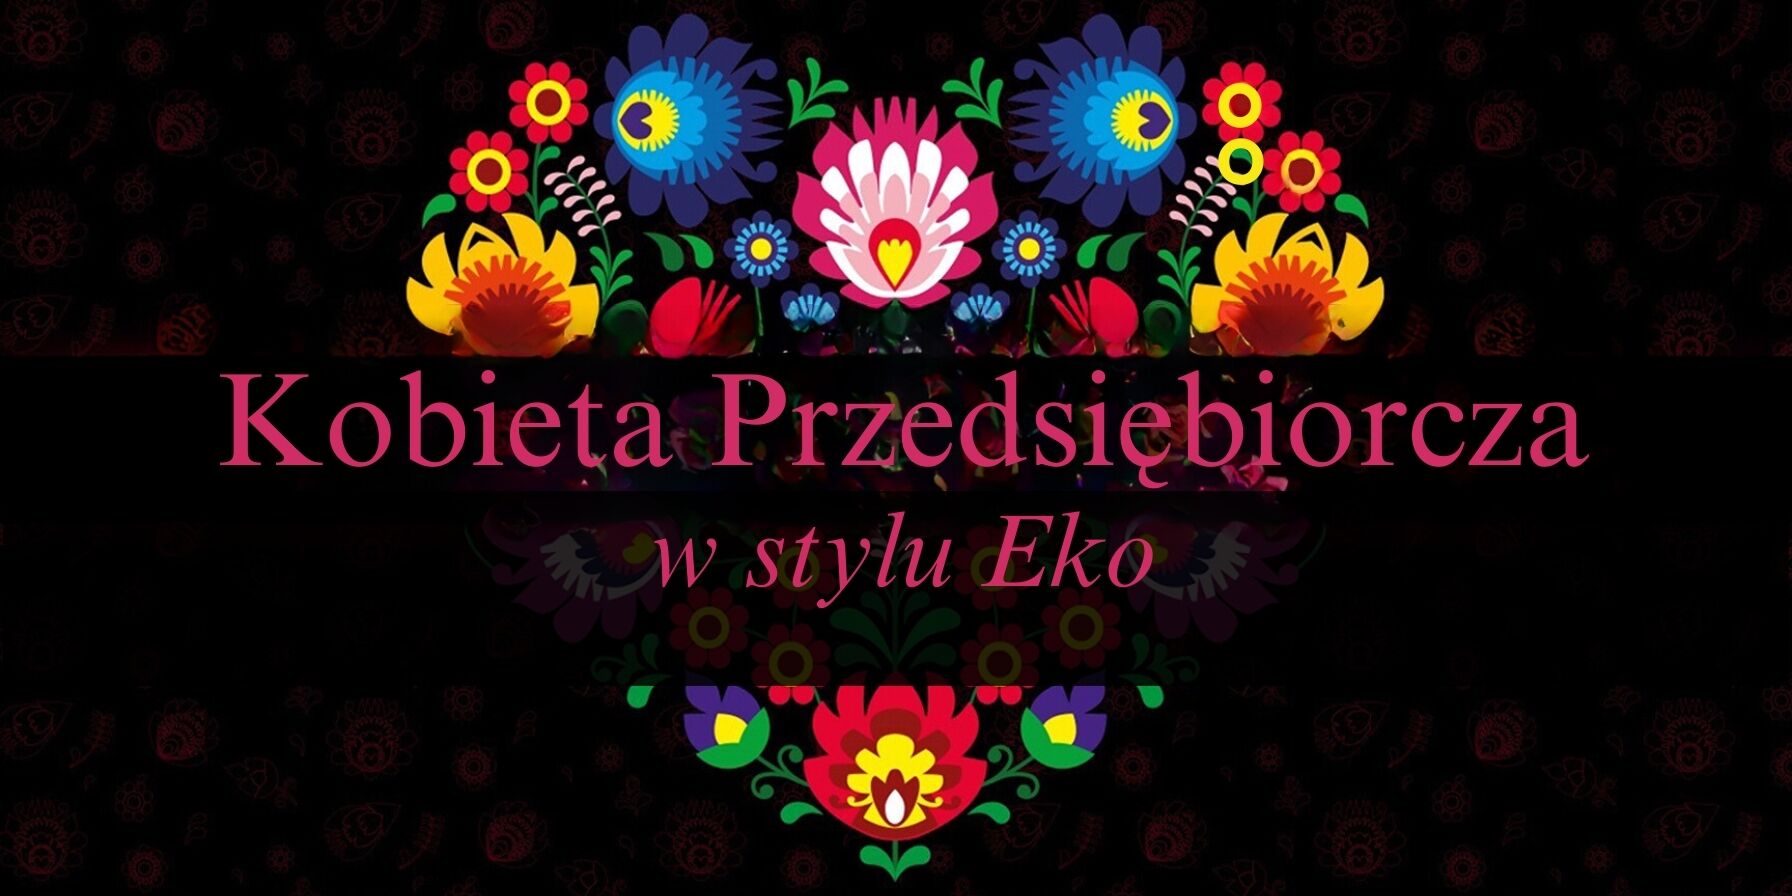 Grafika z napisem "Kobieta Przedsiębiorcza w stylu Eko", otoczonym przez symetryczny, kolorowy wzór kwiatowy na ciemnym tle z odbiciem.